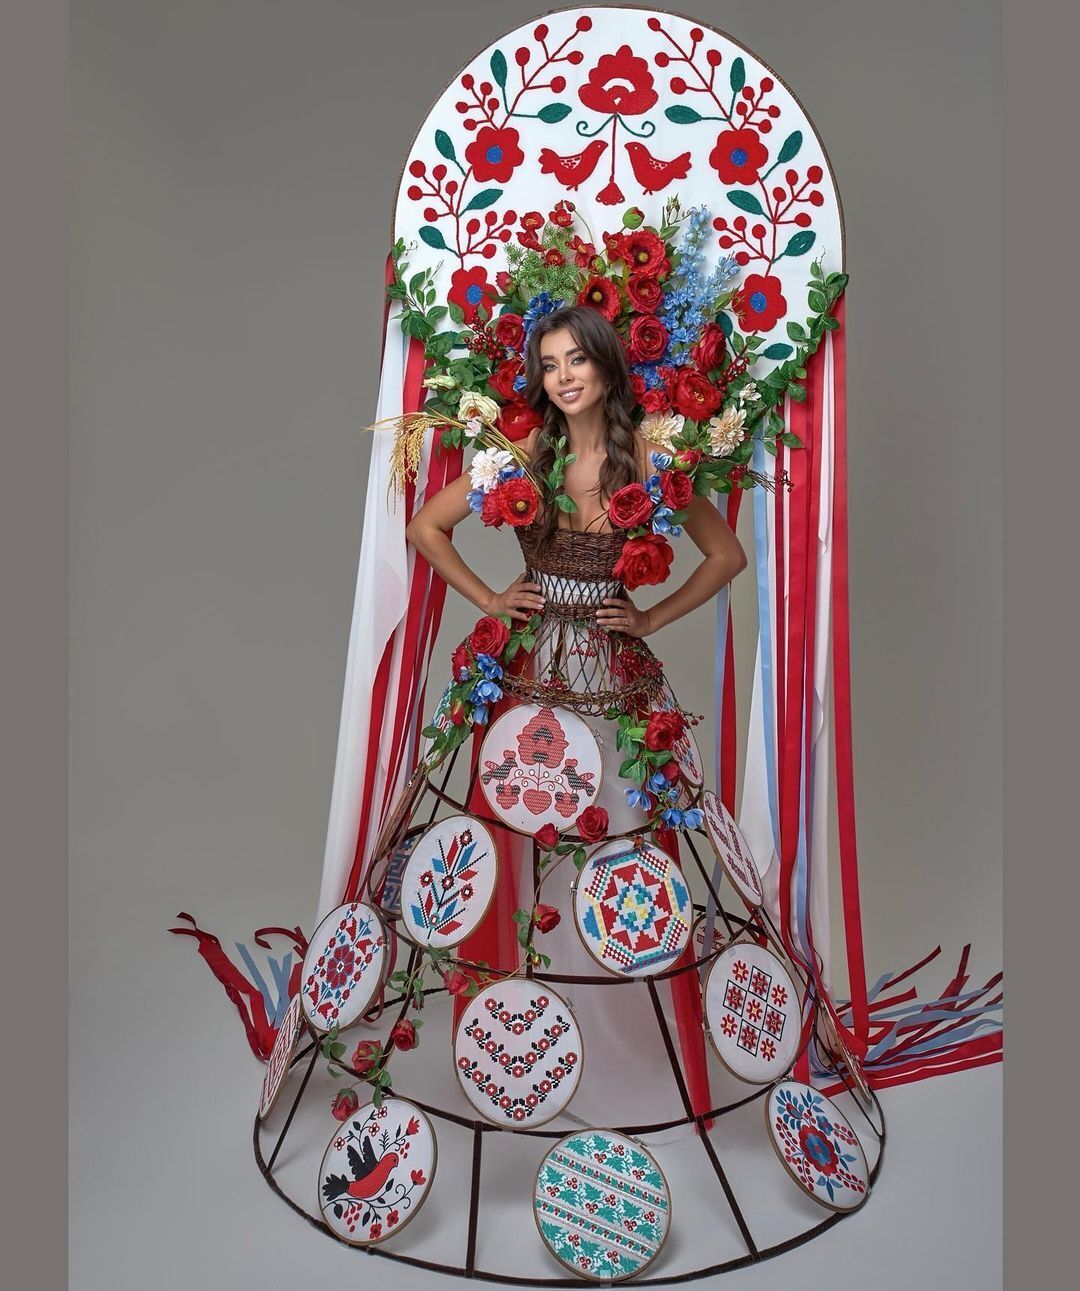 Національний костюм для конкурсу "Міс Всесвіт" Ганни Неплях.